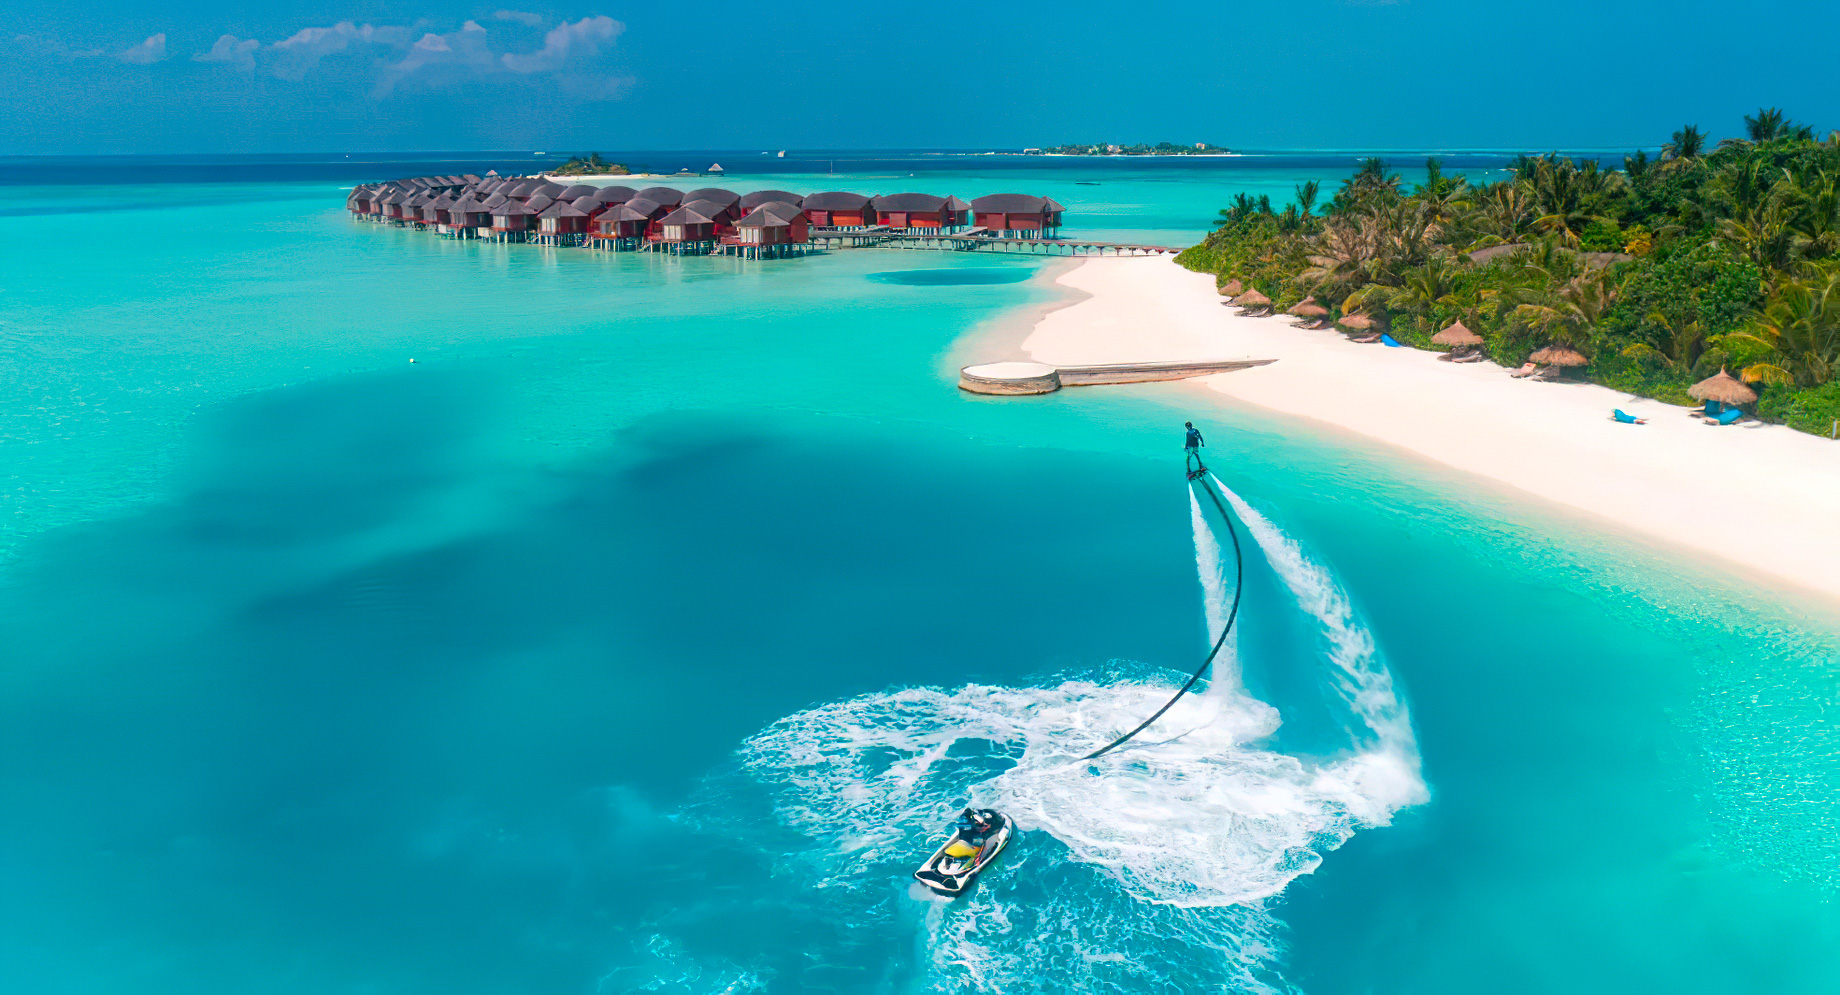 Anantara Thigu Maldives Resort – South Male Atoll, Maldives – Watersports Fly Board